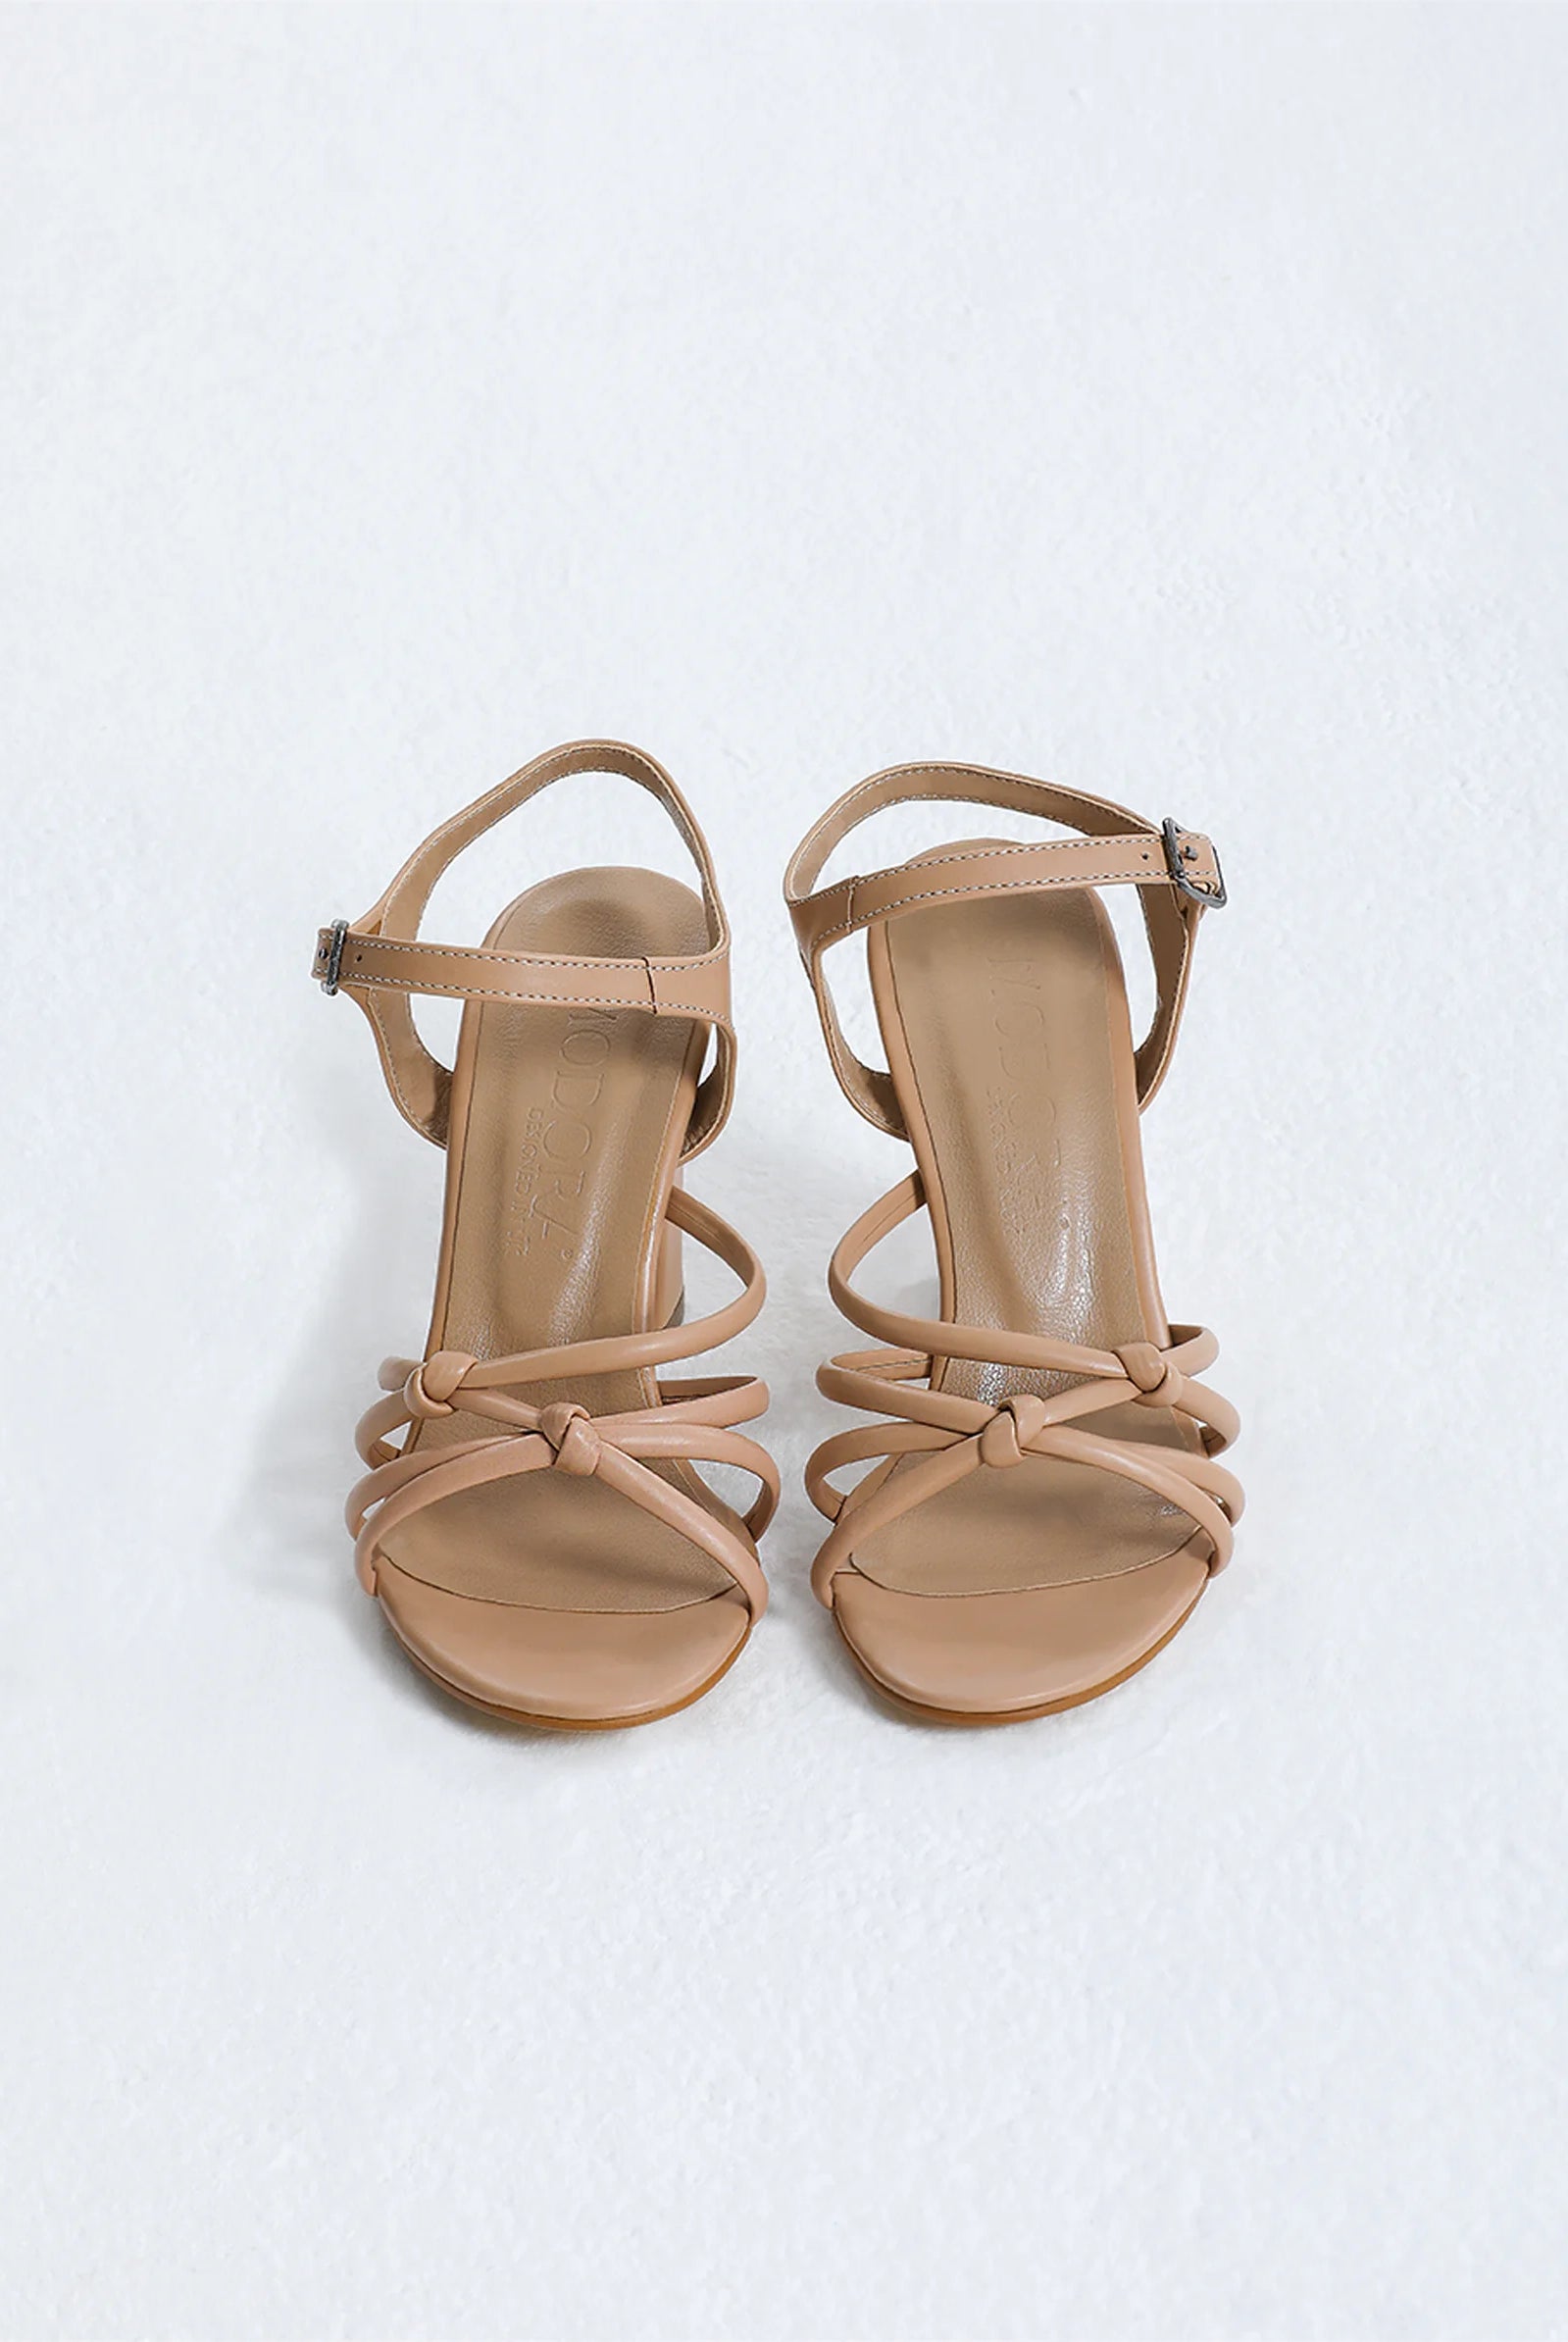 tan block heel sandals uk online